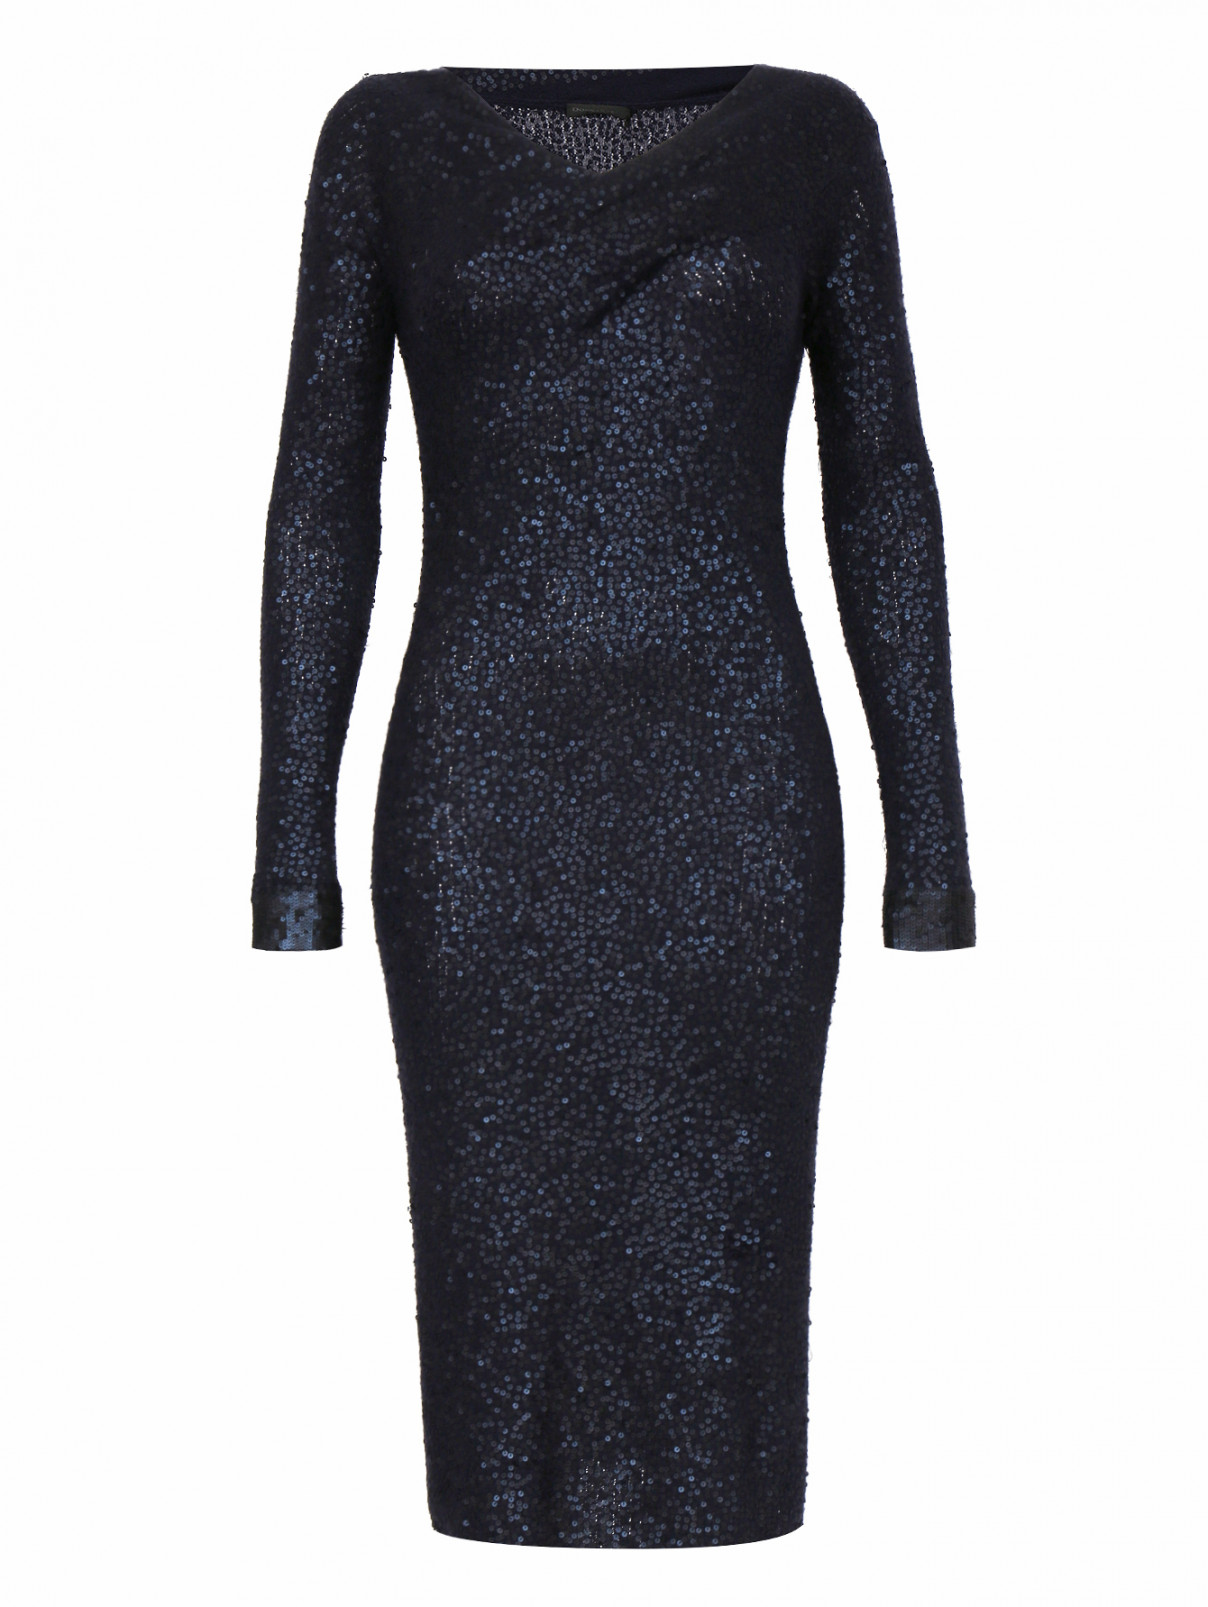 Платье из кашемира и шелка декорированное пайетками Donna Karan  –  Общий вид  – Цвет:  Синий